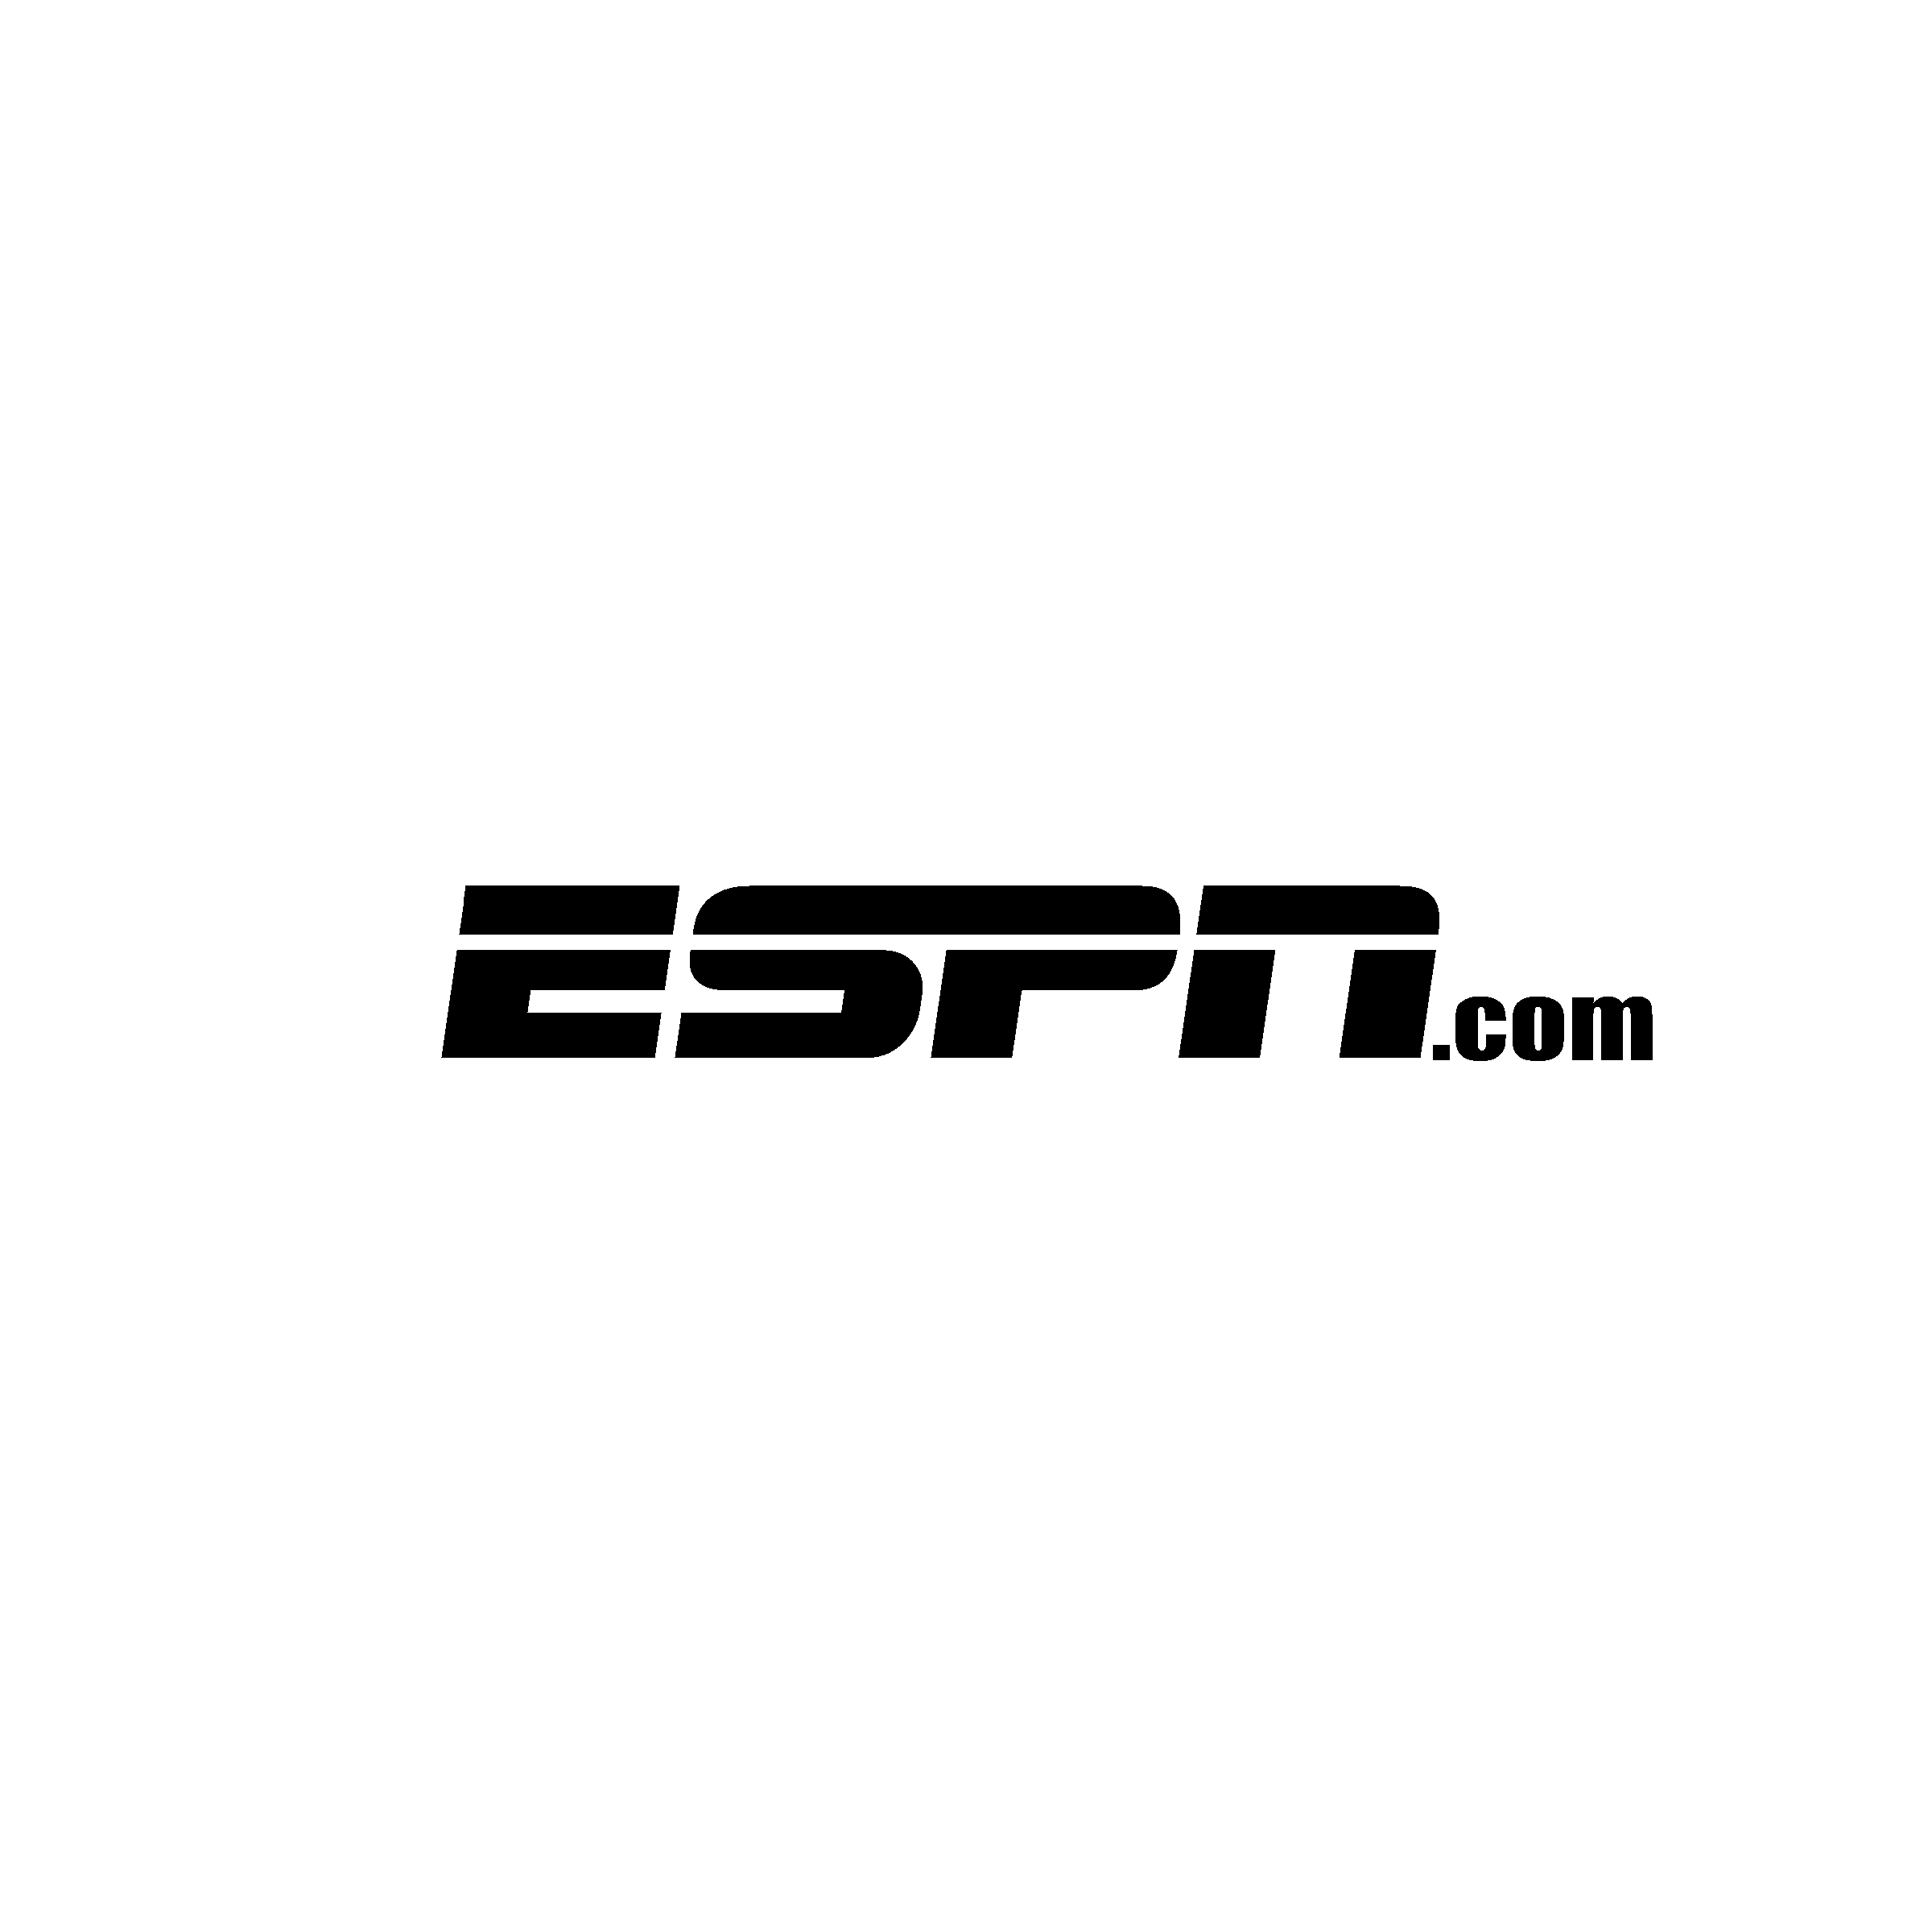 ESPN.com Logo - ESPN com Logo PNG Transparent & SVG Vector